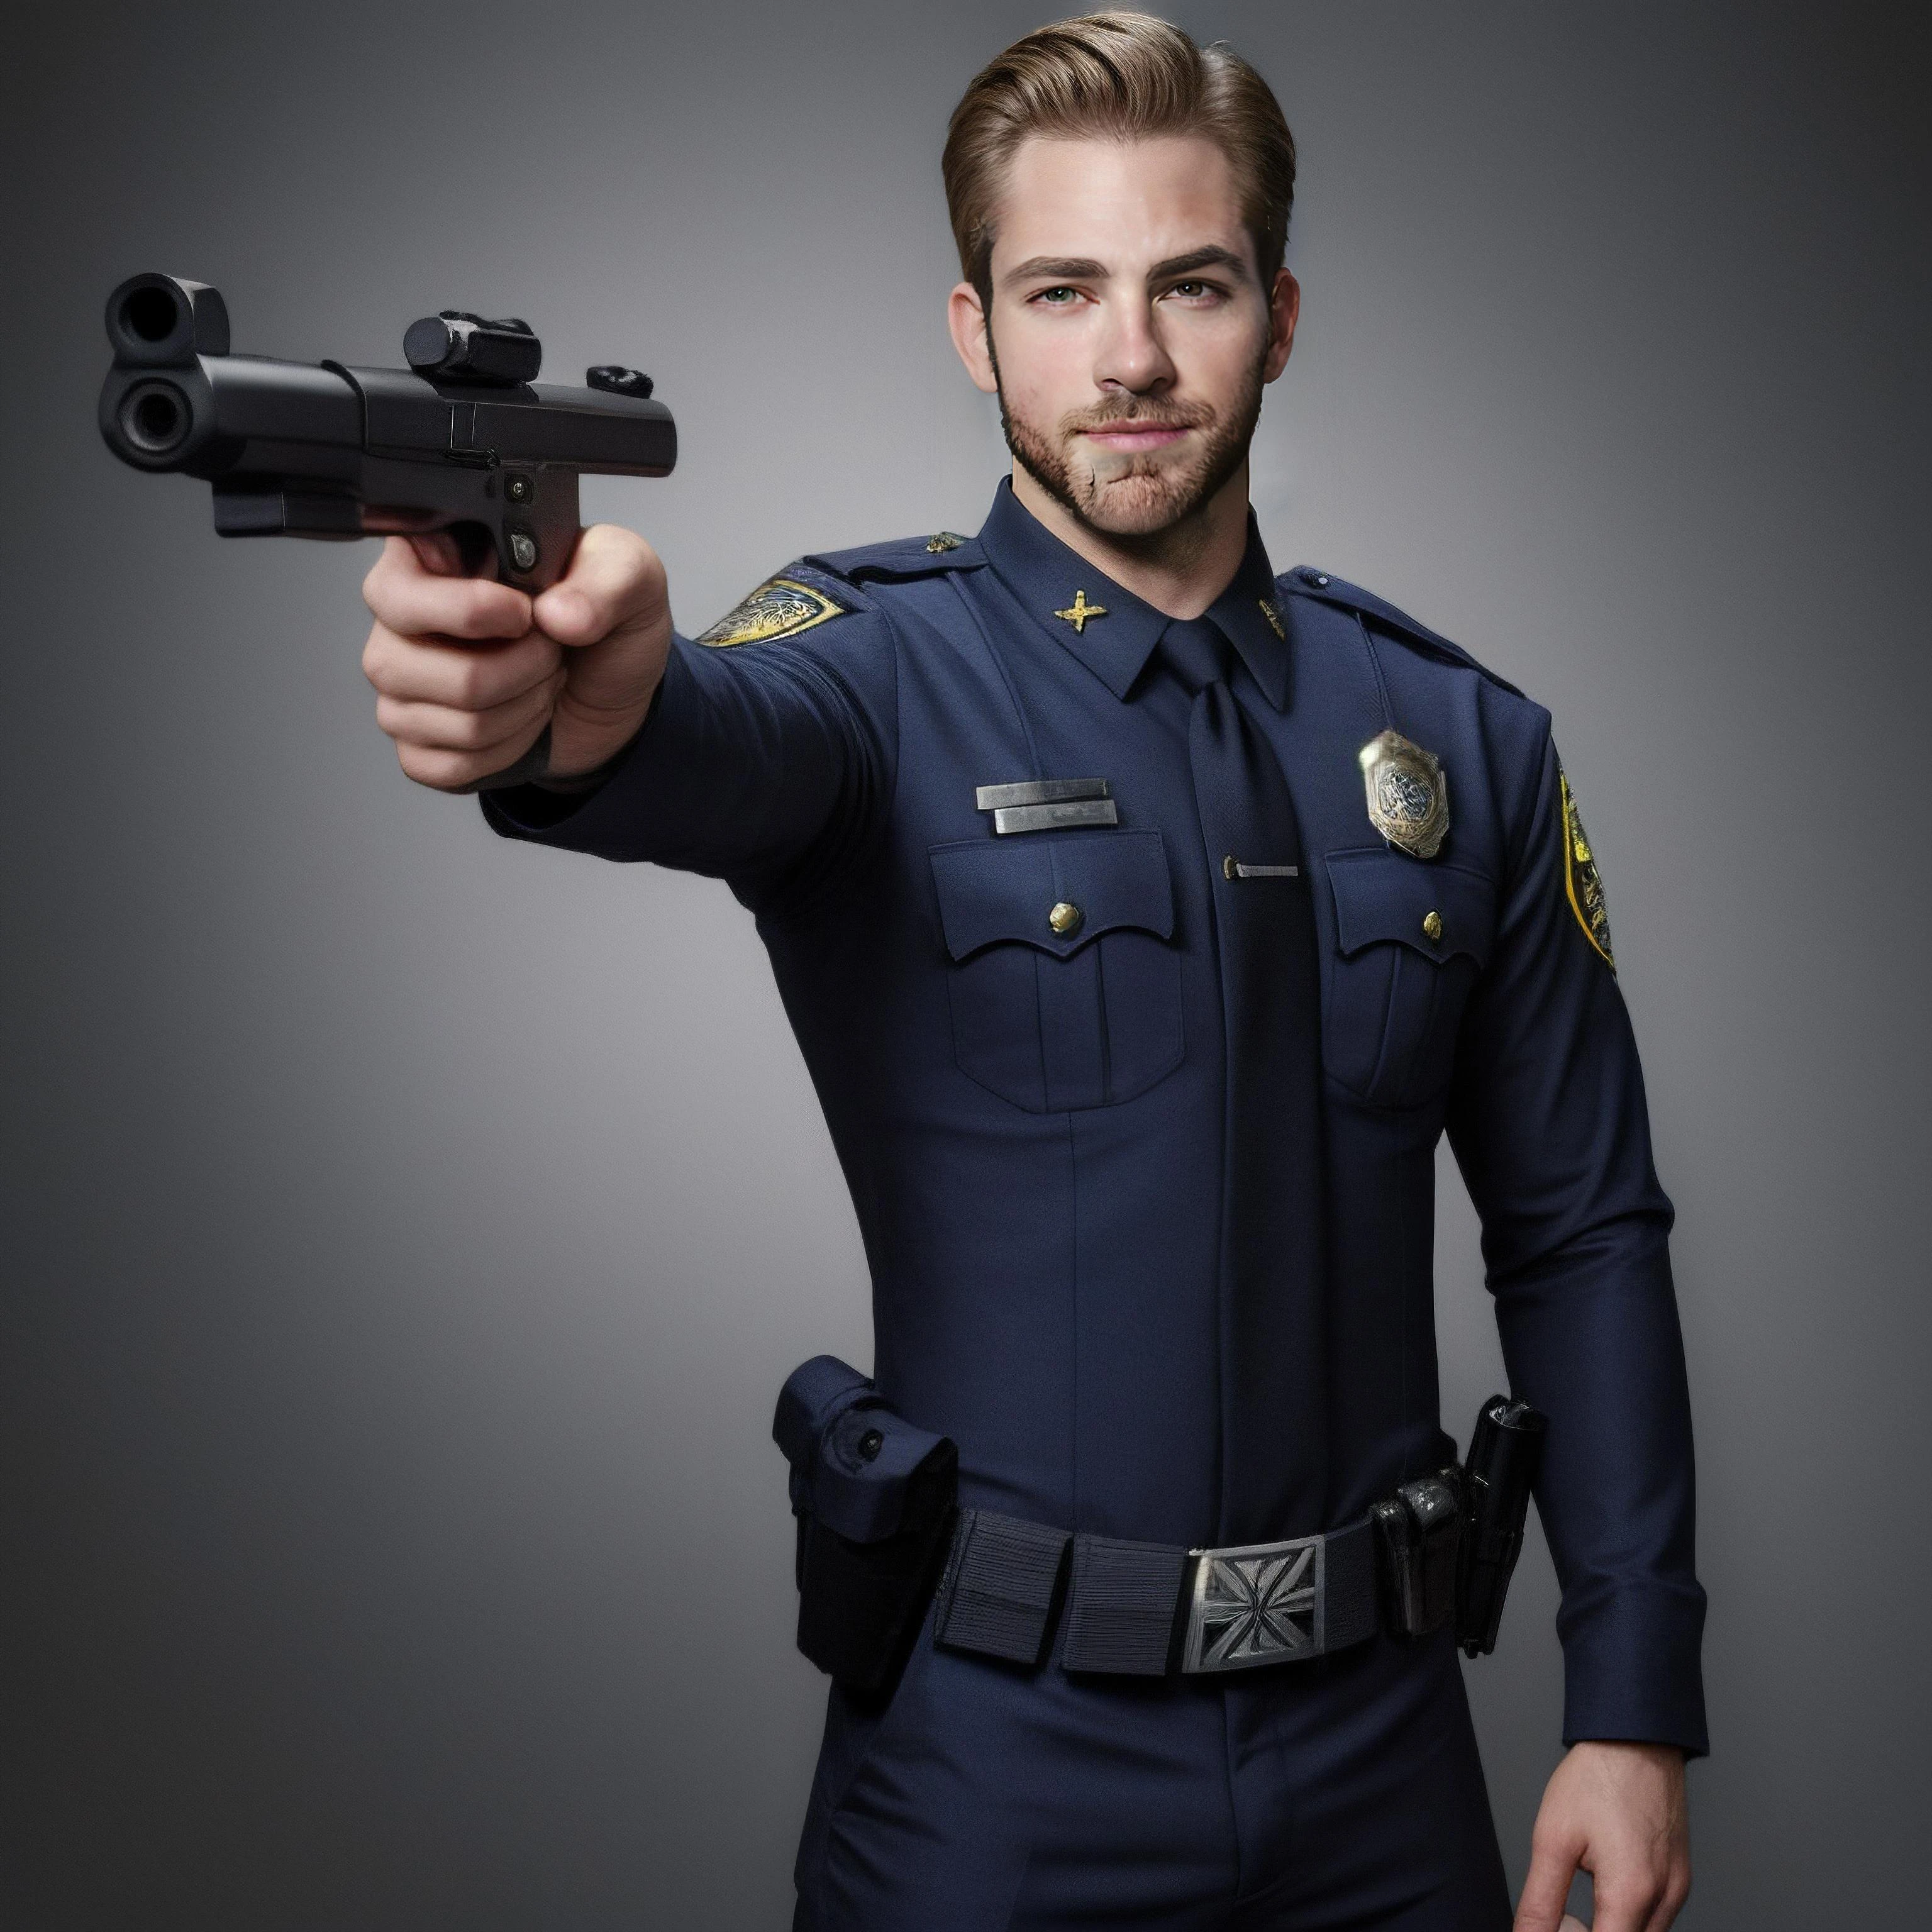 クリス・パイン, 顔, 男, 体, 警察の服装, 腰に銃を, 前方を指す, 警察のポーズ